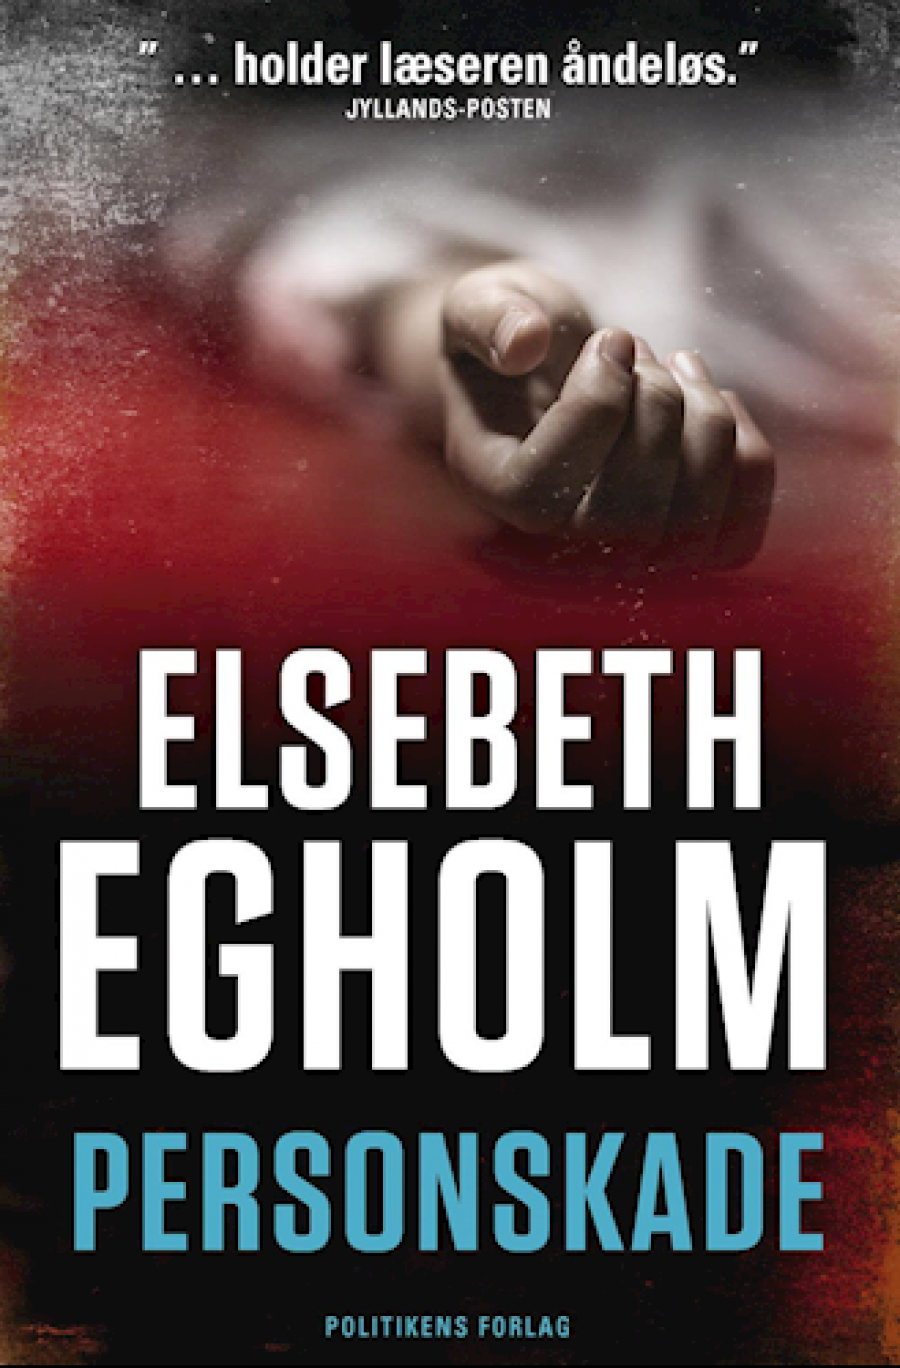 Personskade af Elsebeth Egholm